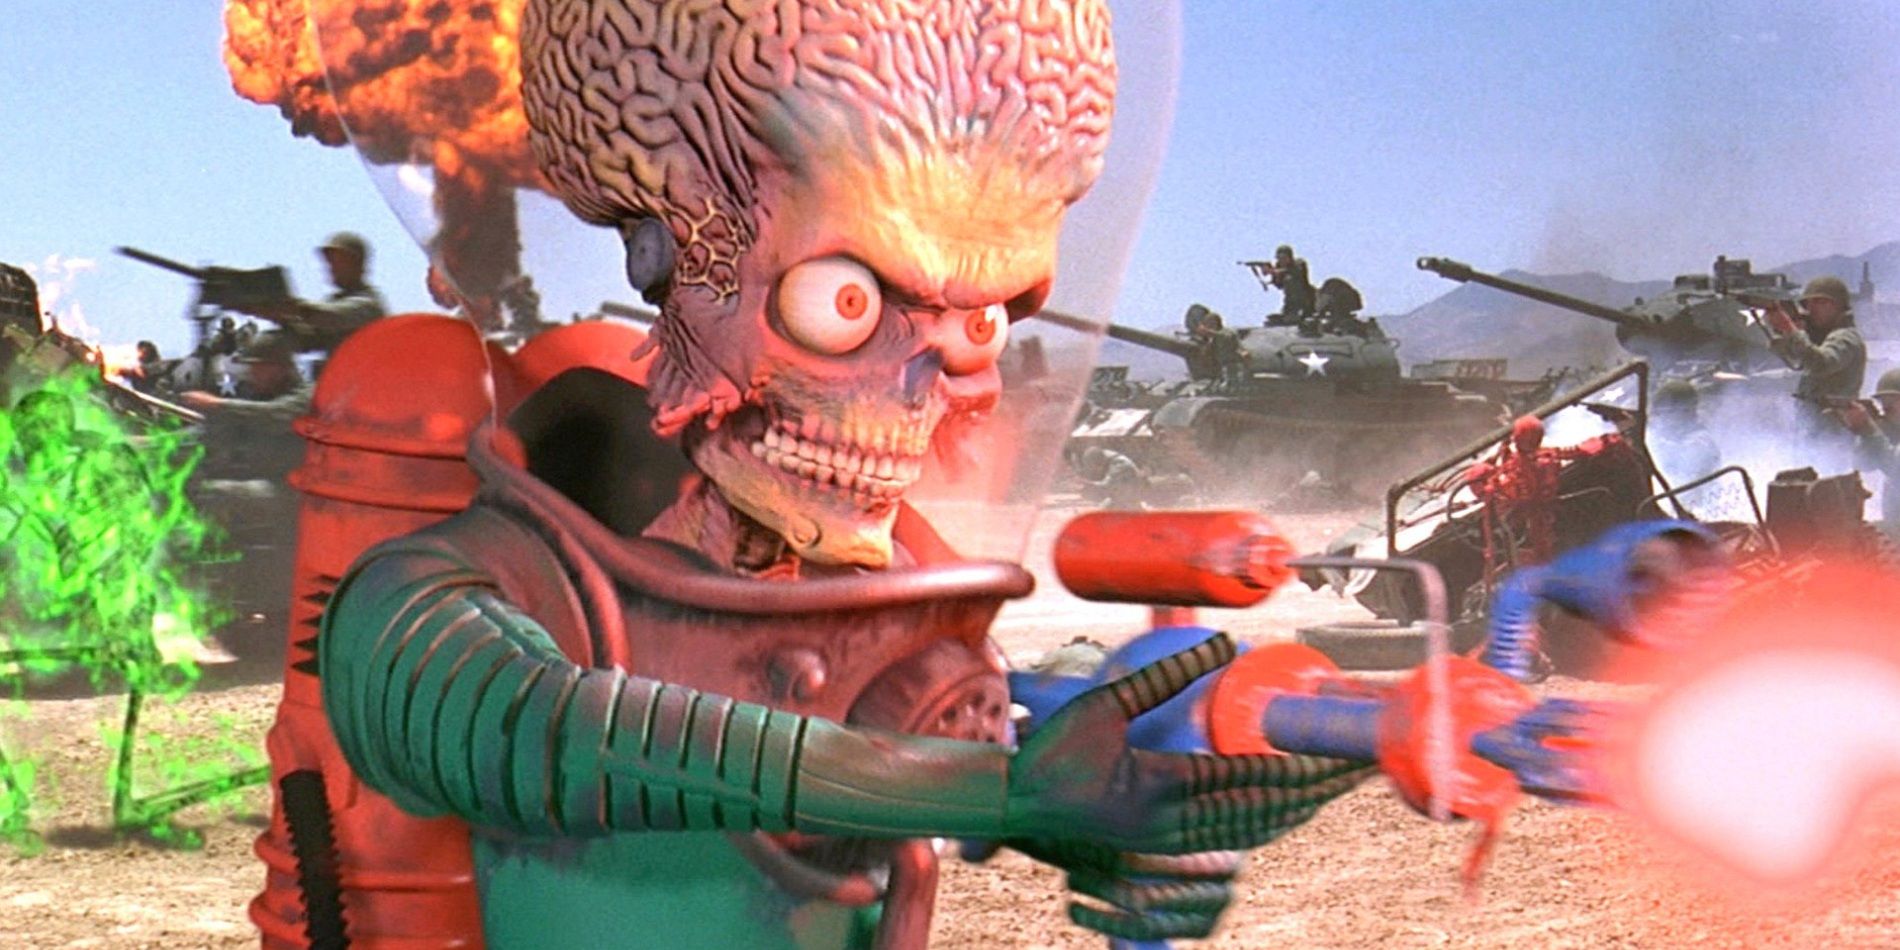 An alien shoots a laser gun in Mars Attacks!